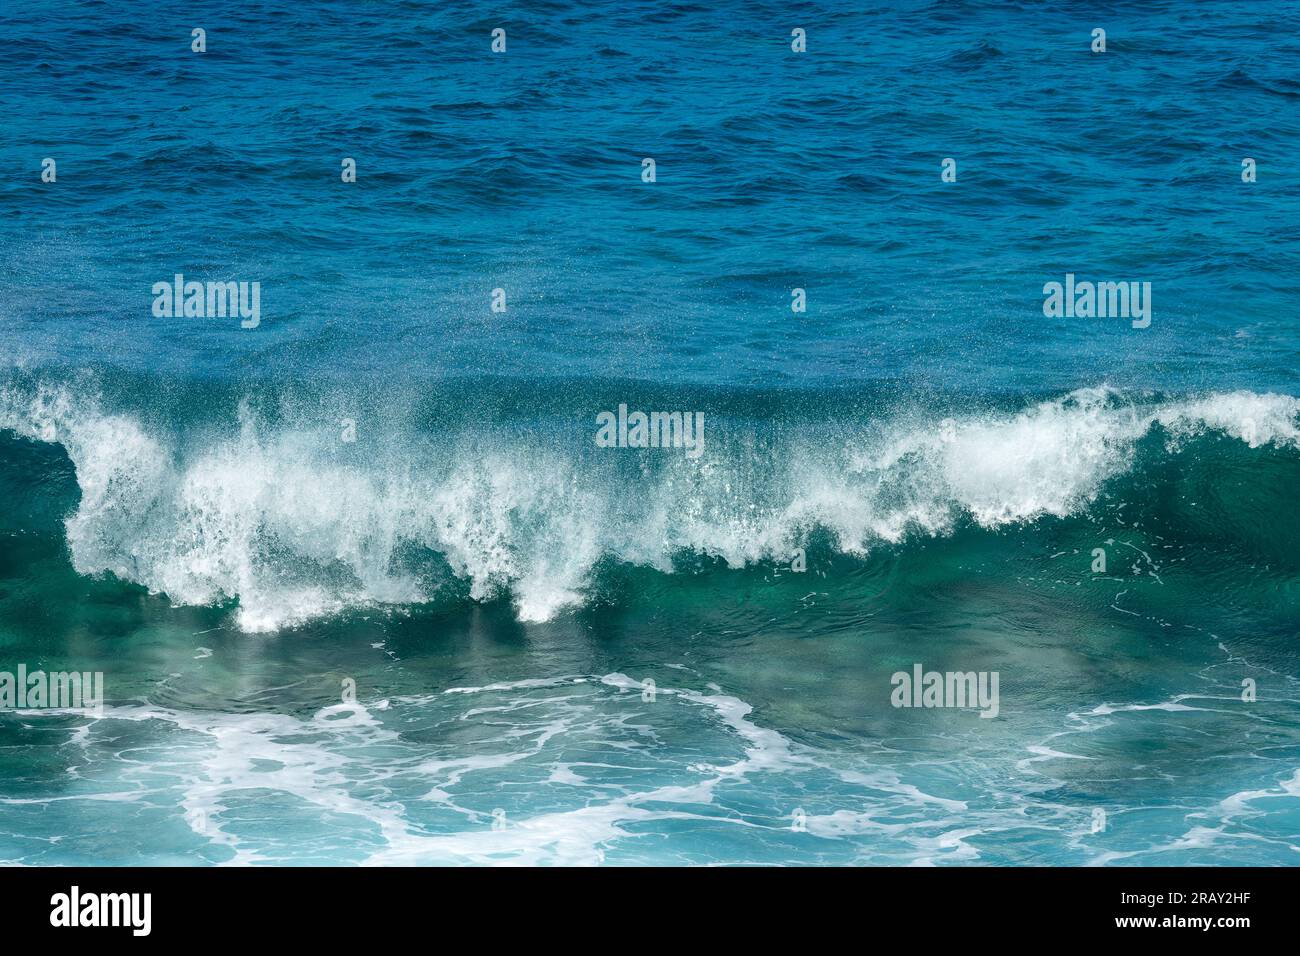 Vorderansicht einer aufprallenden Welle. Blaues, klares Wasser spritzt, Ozeanhintergrund. Stockfoto